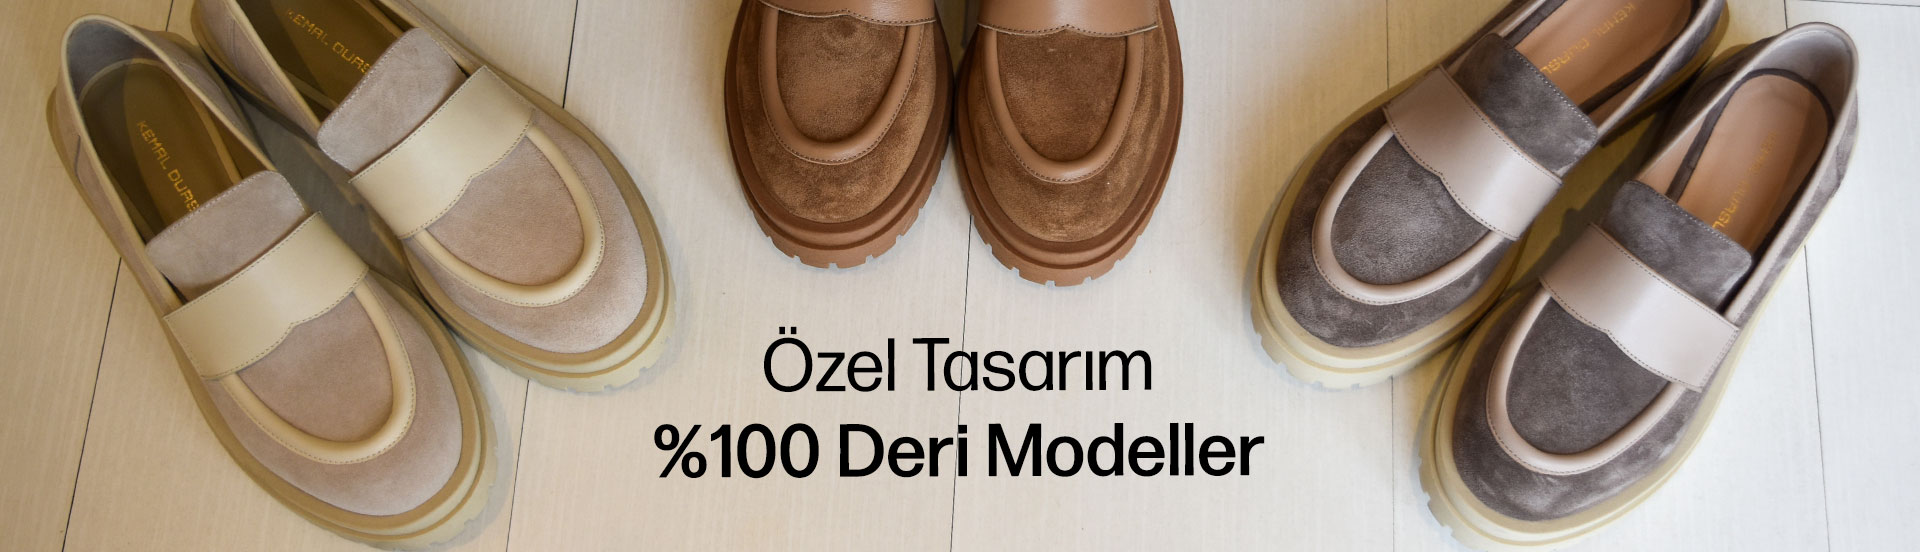 Özel Tasarım Kadın Ayakkabı Modelleri - Kemal Dursun